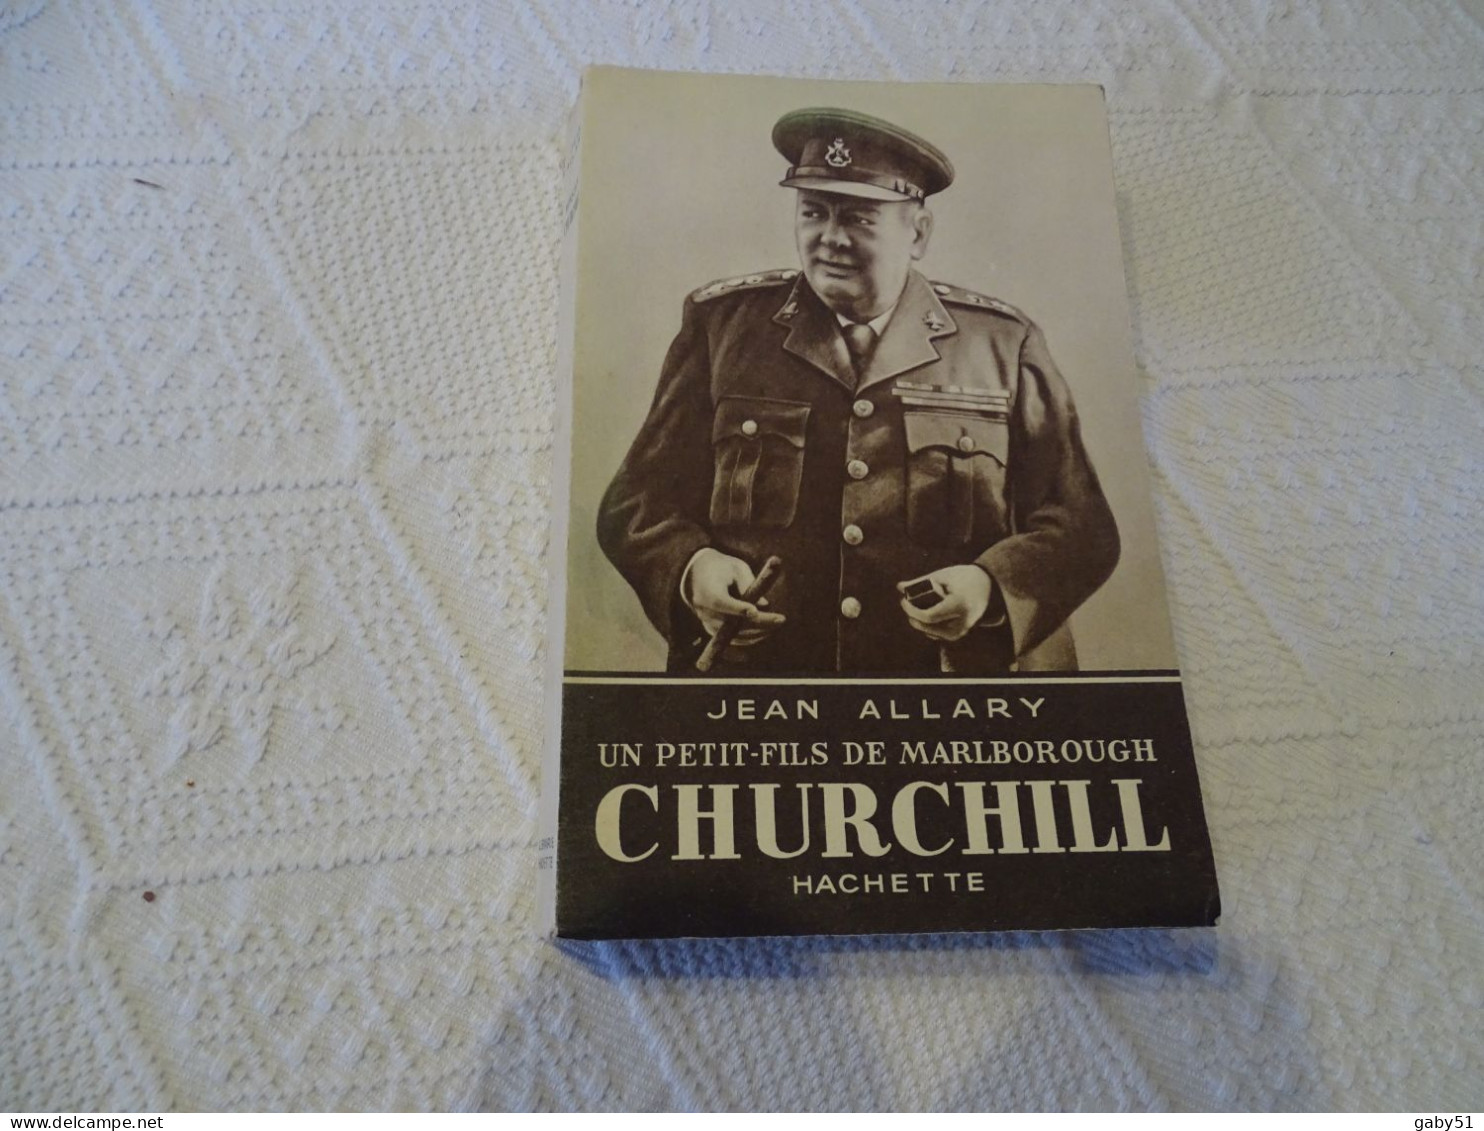 CHURCHILL, Jean Allary, Hachette, 1945  ; L 20 - 1901-1940